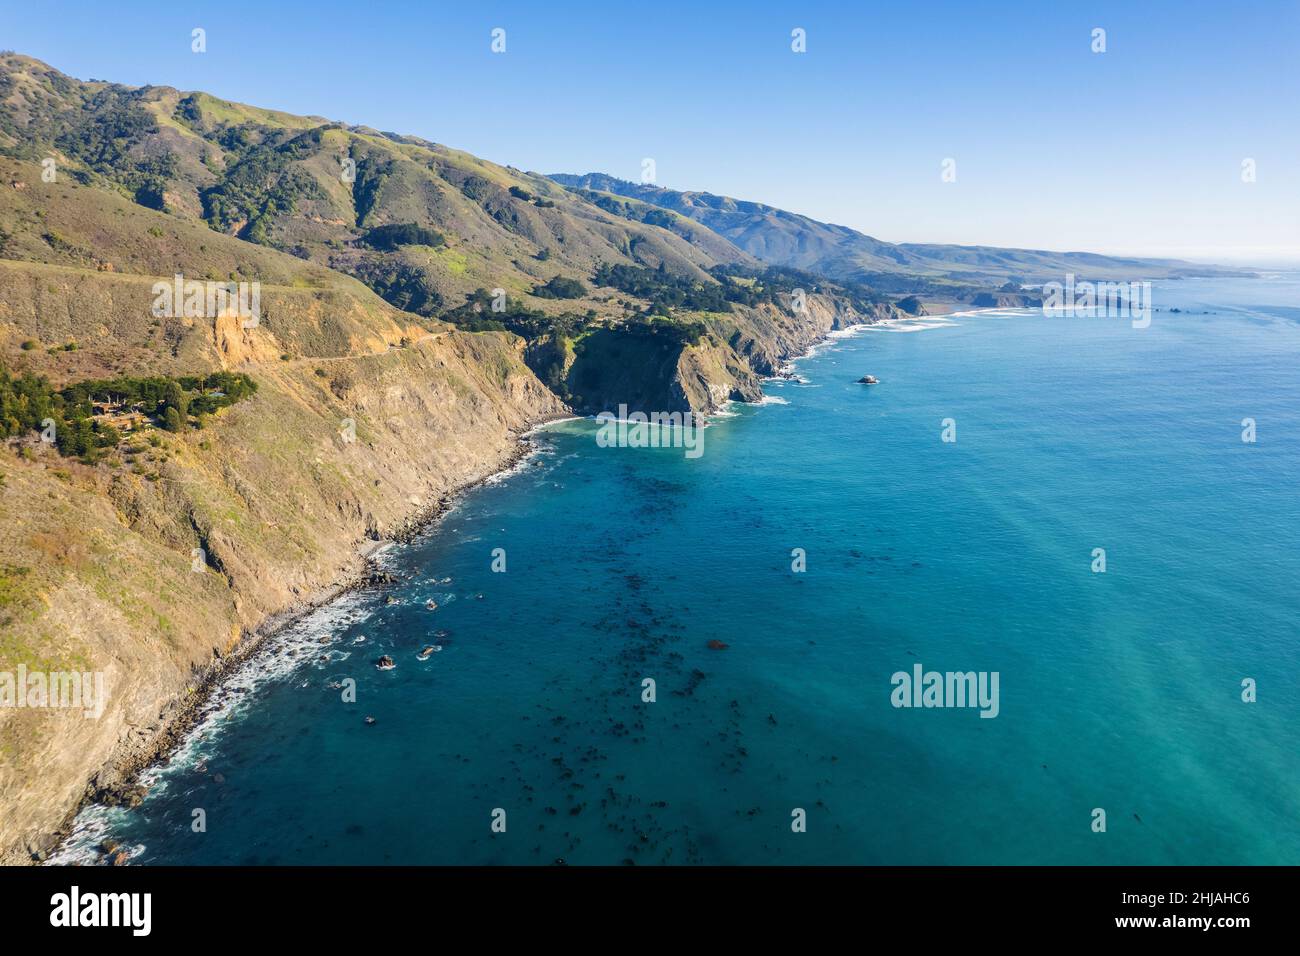 Southern California Scenic Coastline Aerial Photo. Cambria, United States of America. Stock Photo